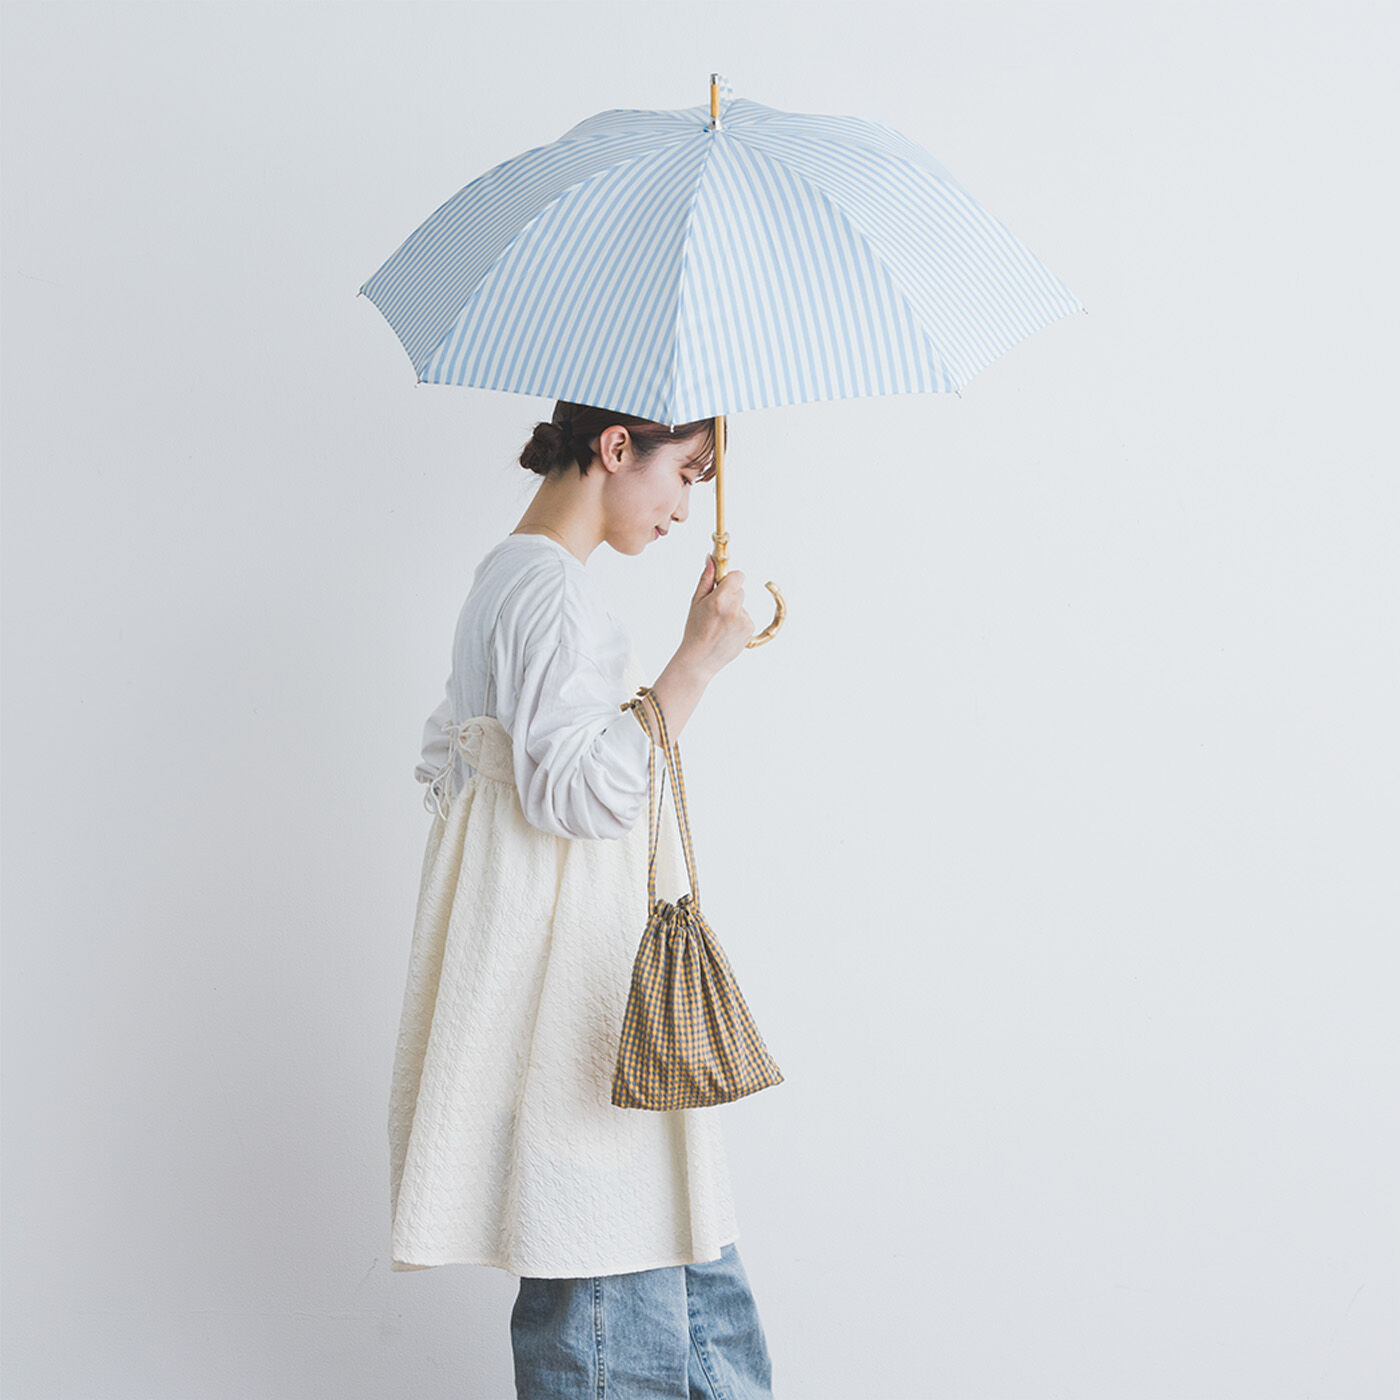 SeeMONO|涼しい顔でＵＶ対策　ストライプの晴雨兼用傘〈ＳＡＸ　ＢＬＵＥ〉|竹材のシャフトで軽いのも魅力。ストライプがさわやかで涼し気。